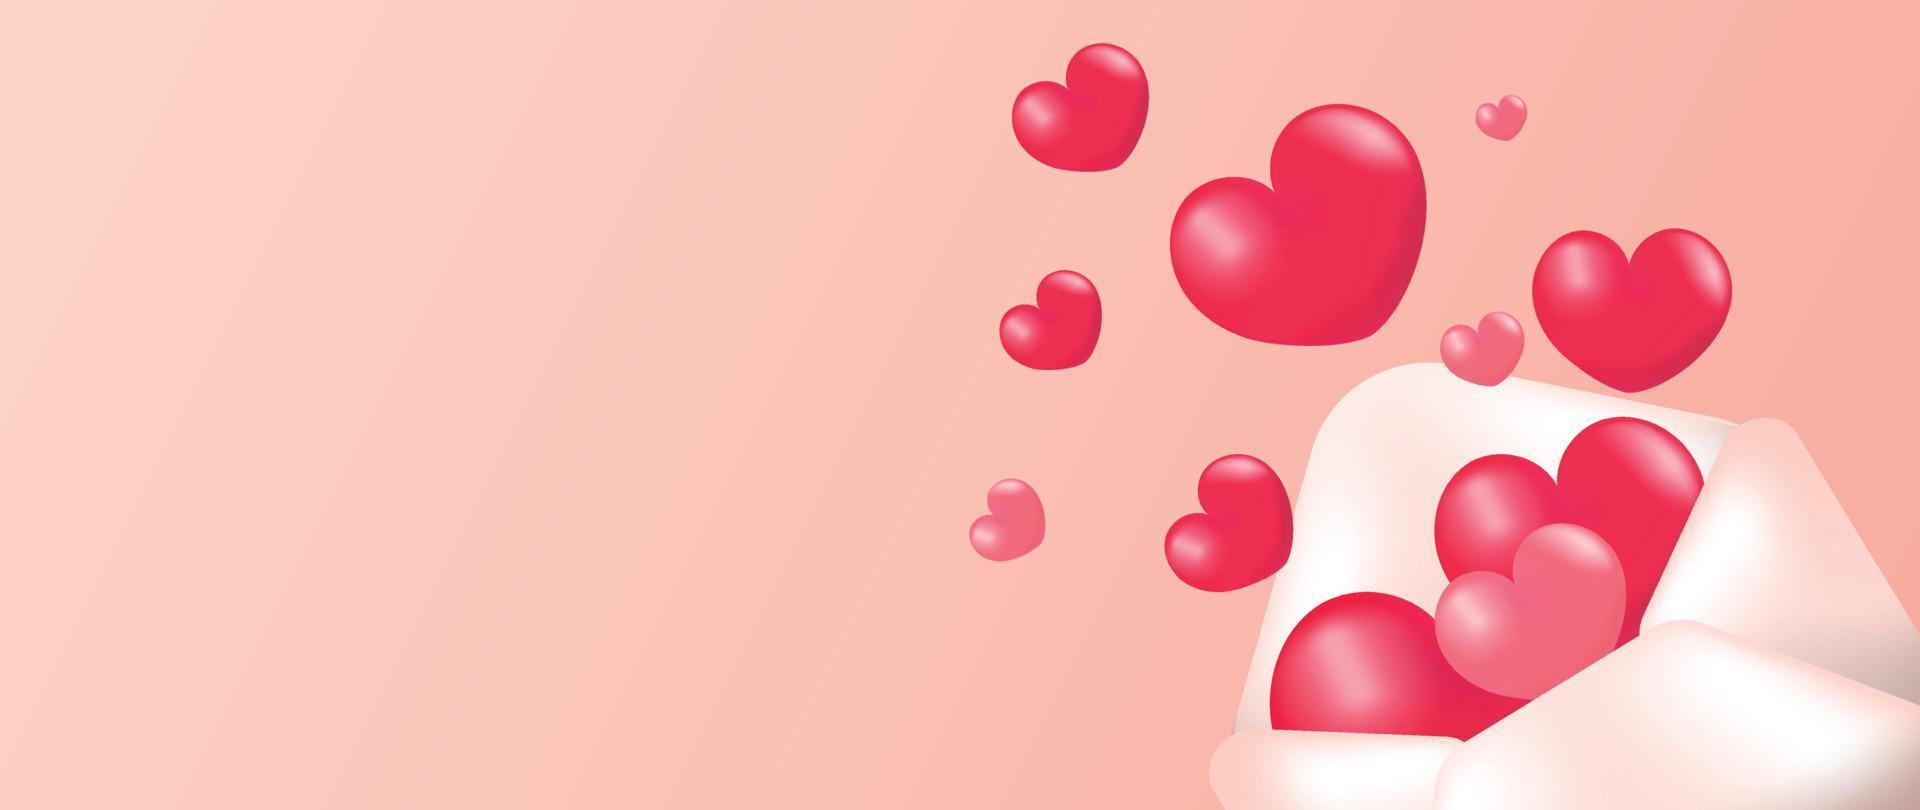 gelukkig Valentijnsdag dag concept vector. abstract 3d samenstelling versieren met glanzend rood roze harten drijvend van liefde brief envelop achtergrond. ontwerp voor banier, kaart, sociaal media, advertenties, marketing. vector